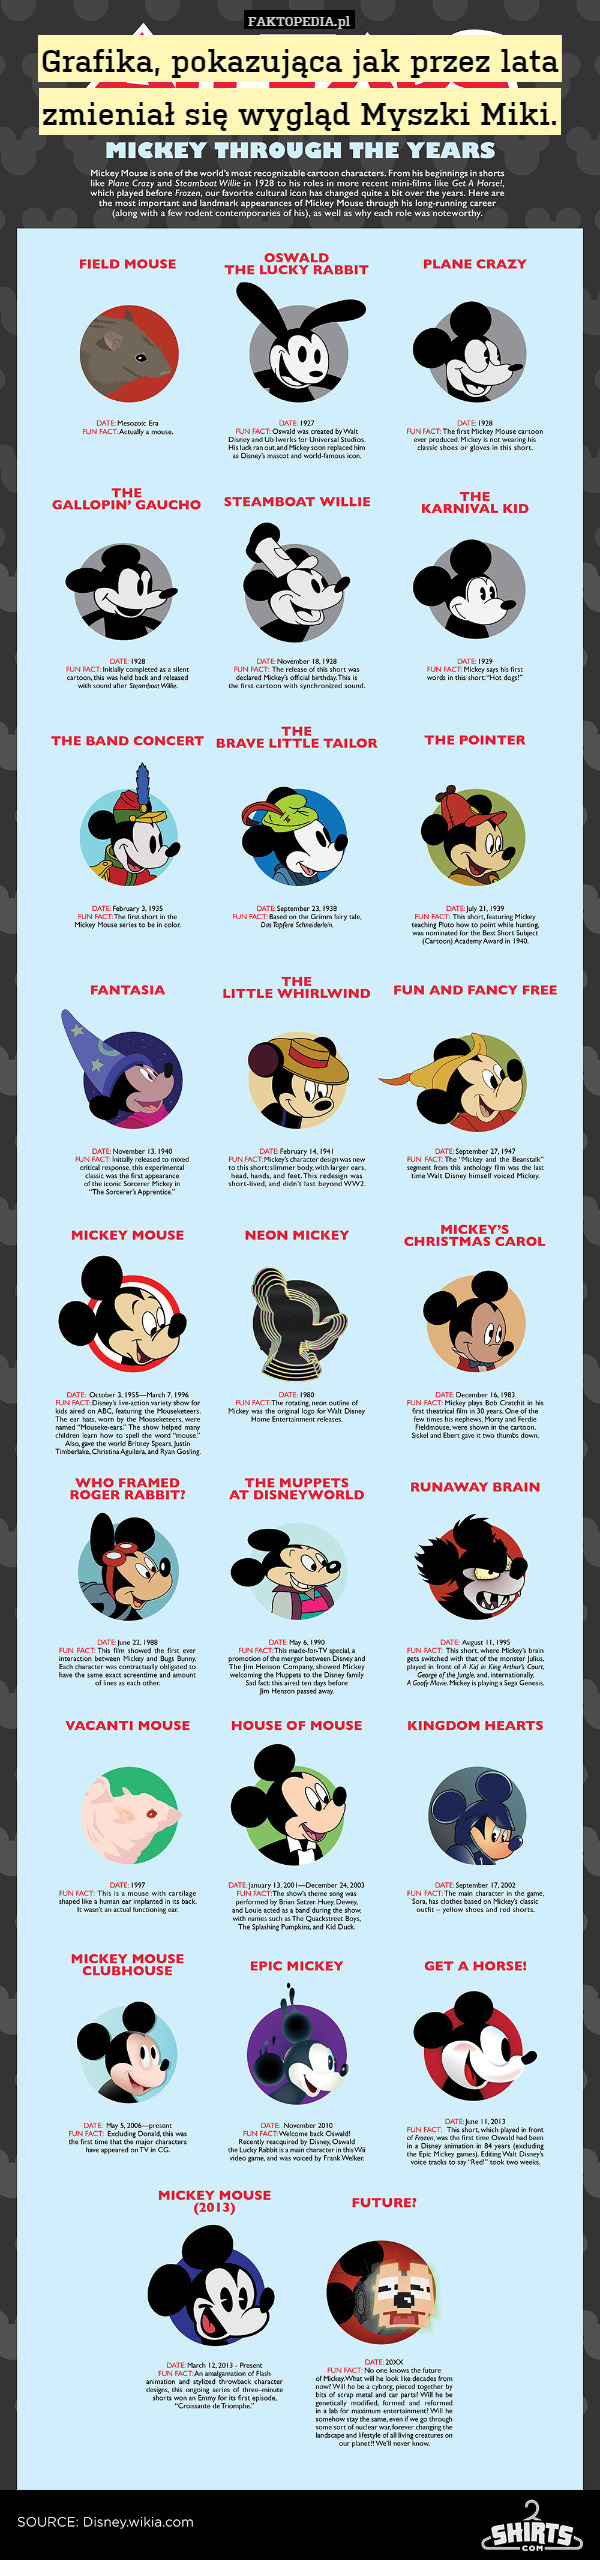 Grafika, pokazująca jak przez lata zmieniał się wygląd Myszki Miki. 